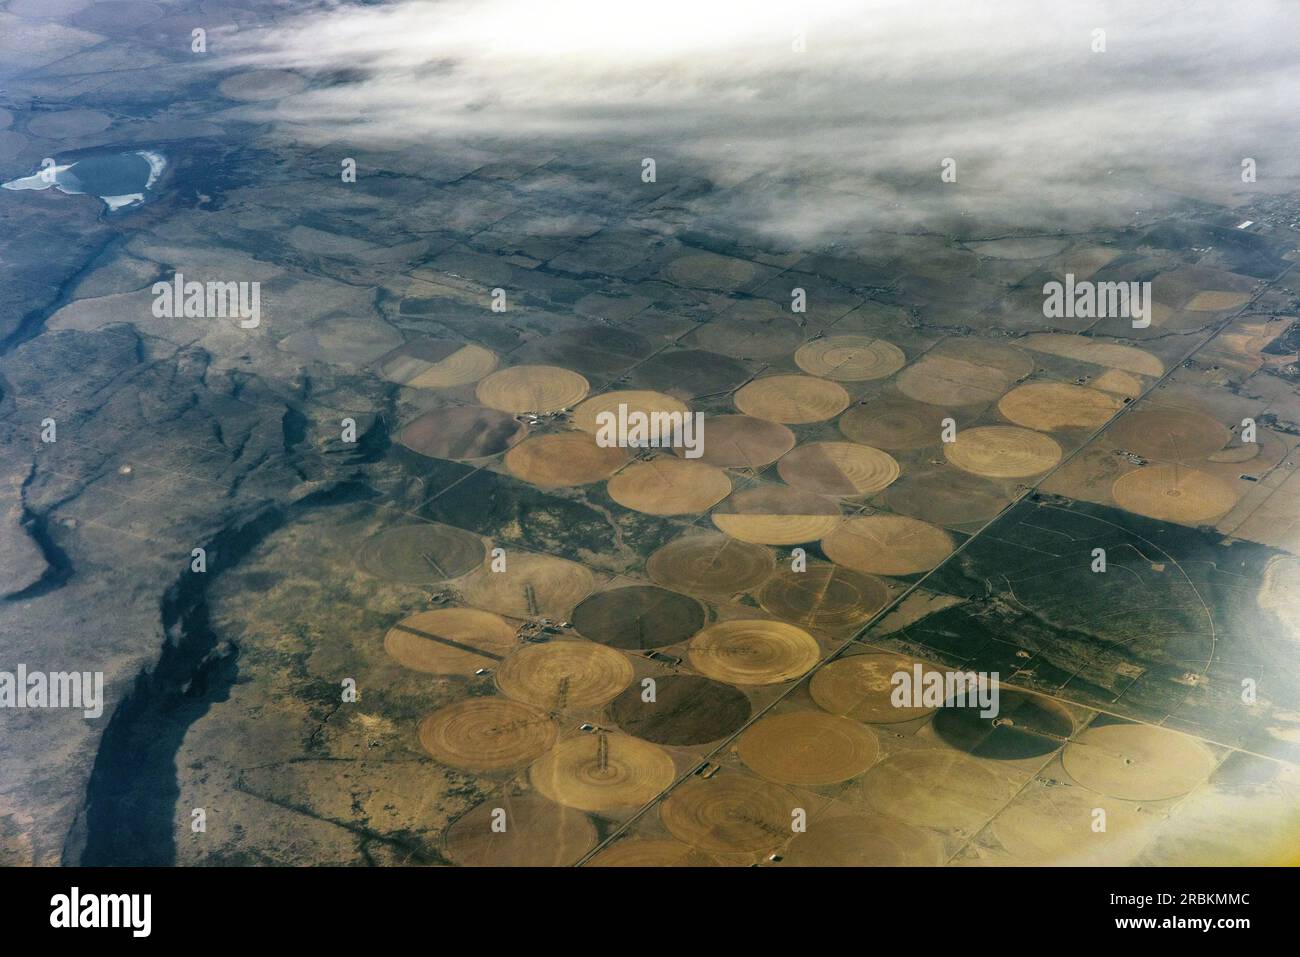 Numerosi campi di cereali irrigati circolari nel deserto, sistemi di irrigazione pivot, foto aerea, USA, Arizona, Sonora-Wueste, Phoenix Foto Stock